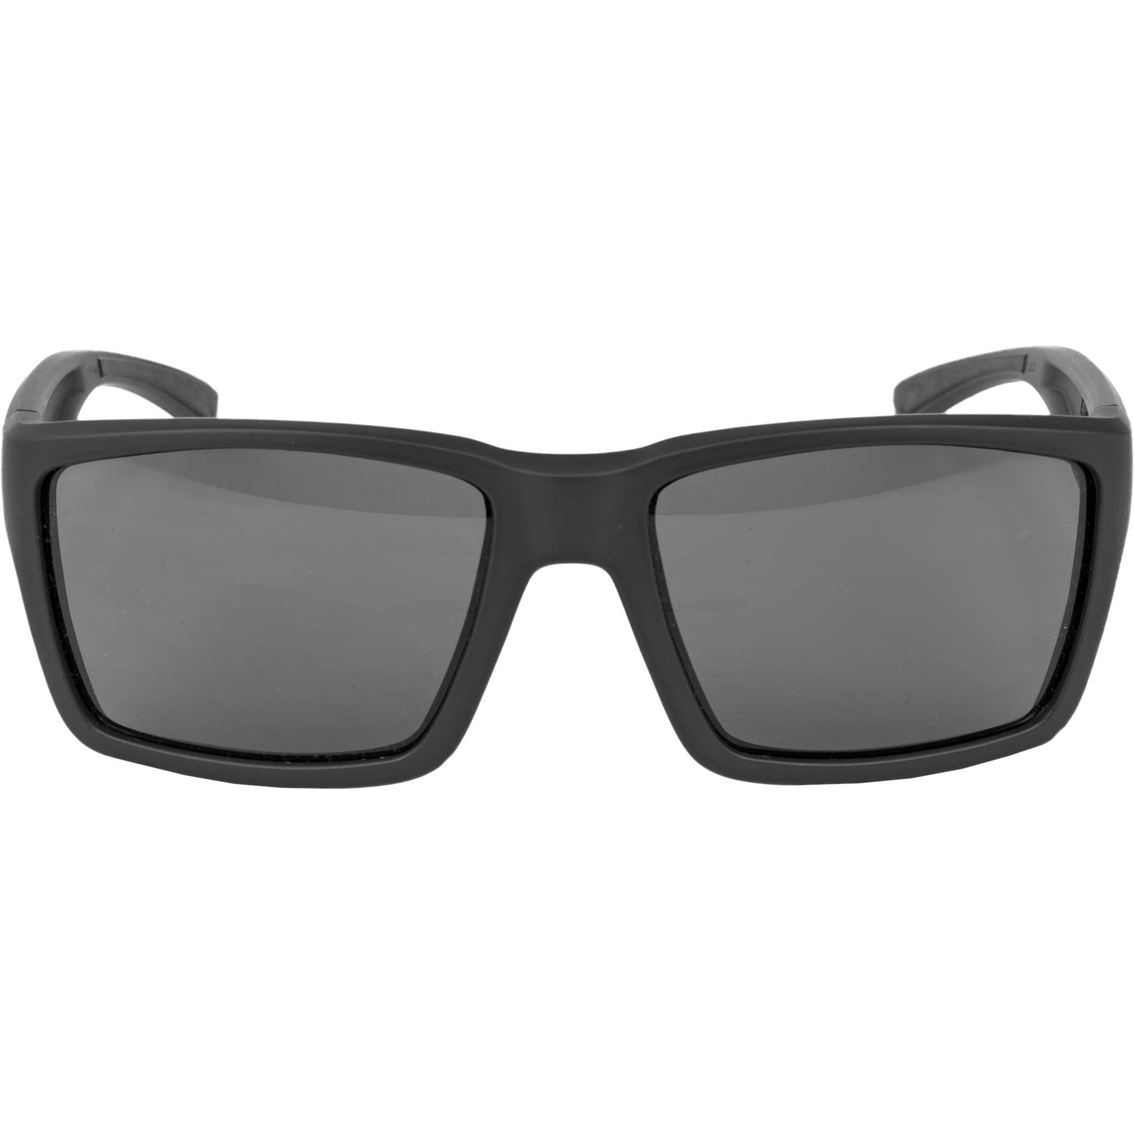 Magpul Industries Explorer XL Eyewear Black Frame Gray Lens - Image 2 of 2